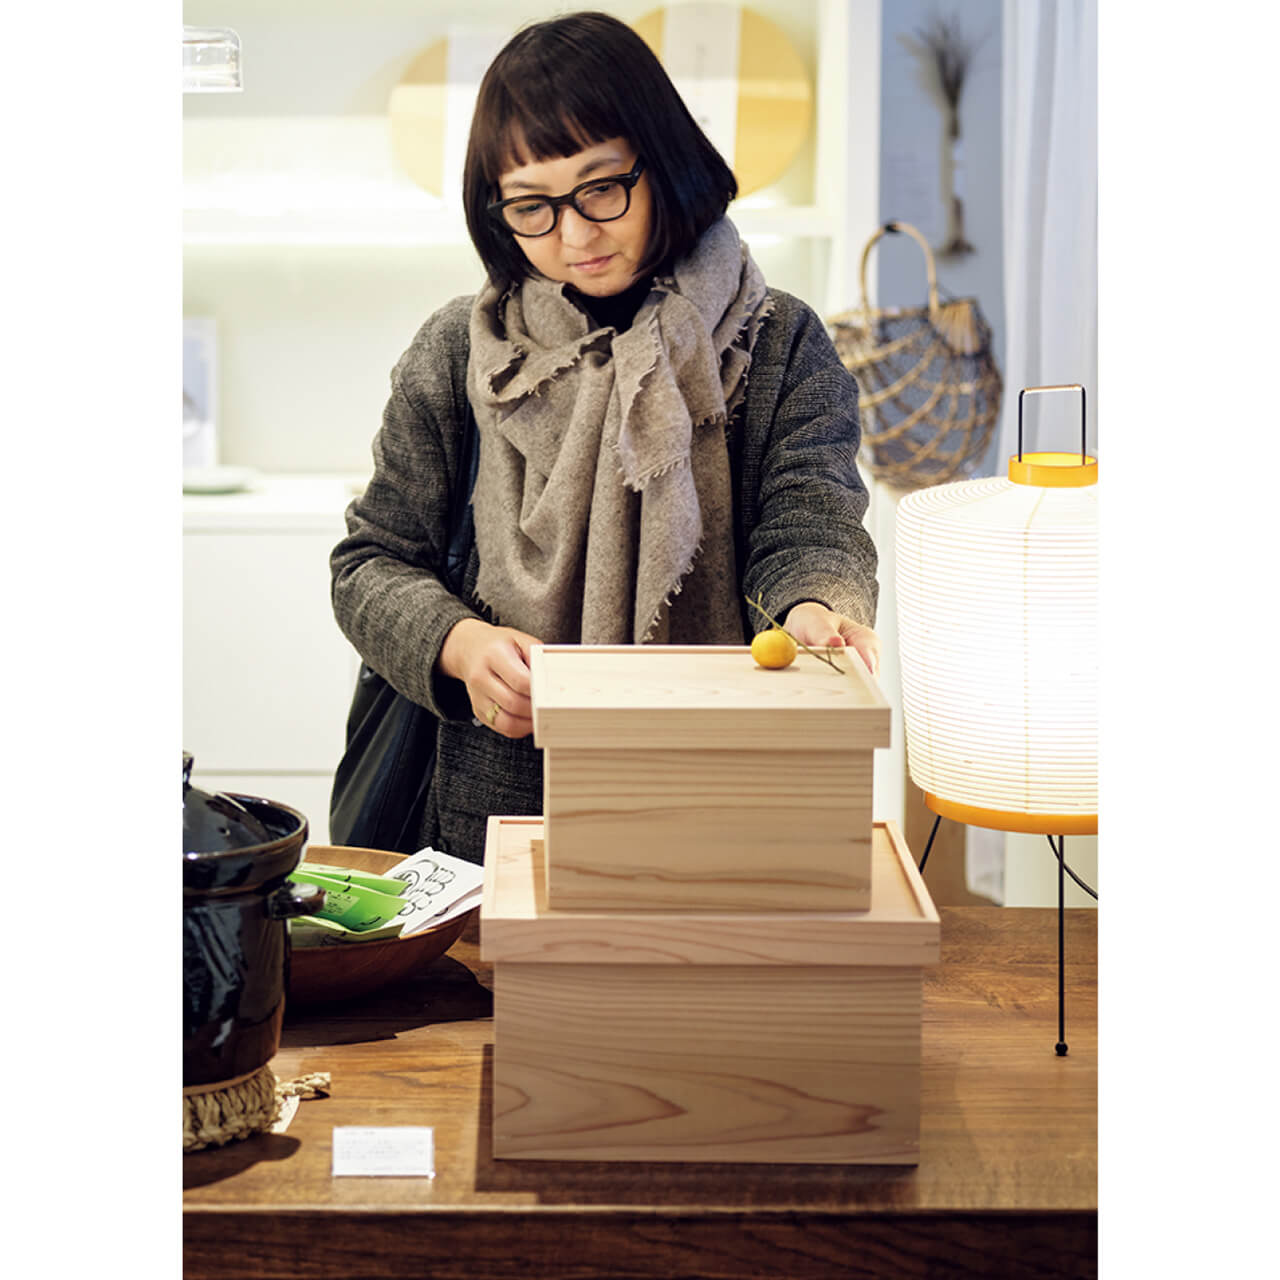 木工作家・川合優さんディレクションの「SOMA」シリーズの箱膳。安定感のある木箱は、割れものも安心して収納できるのが長所。